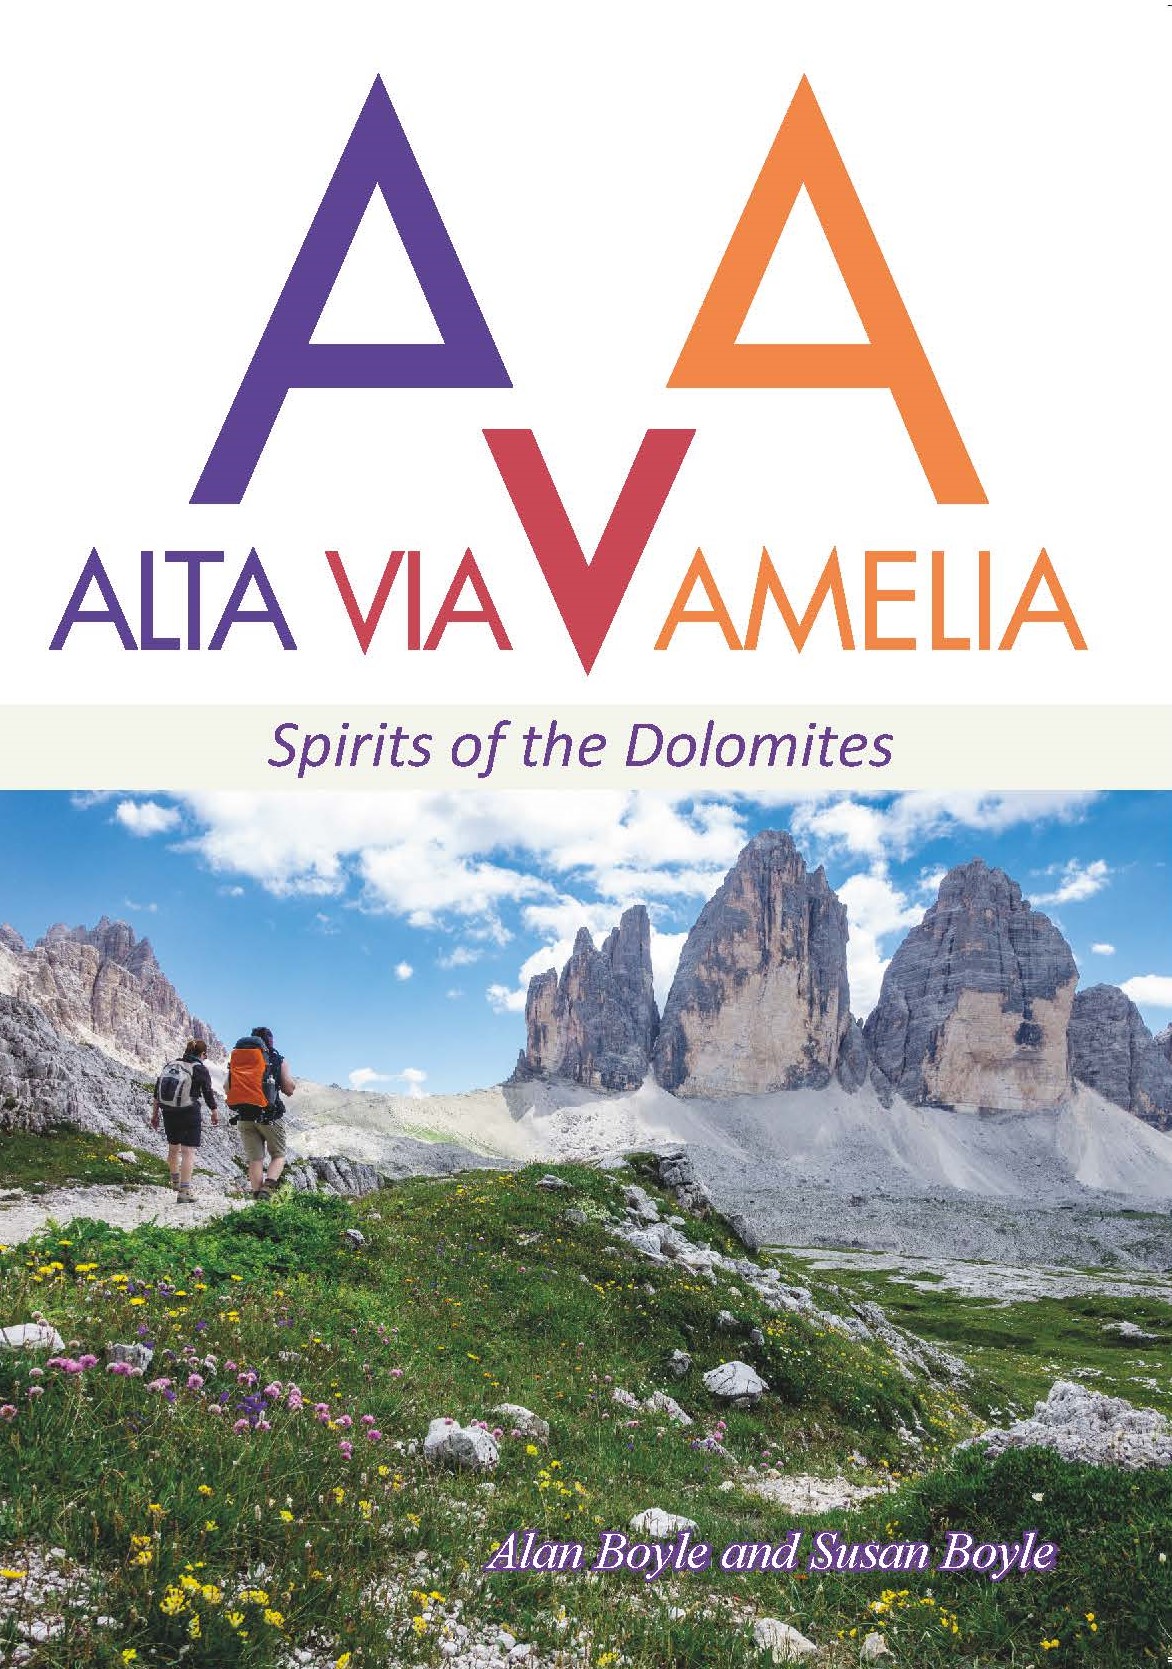 ALTA VIA AMELIA Spirits of the Dolomites